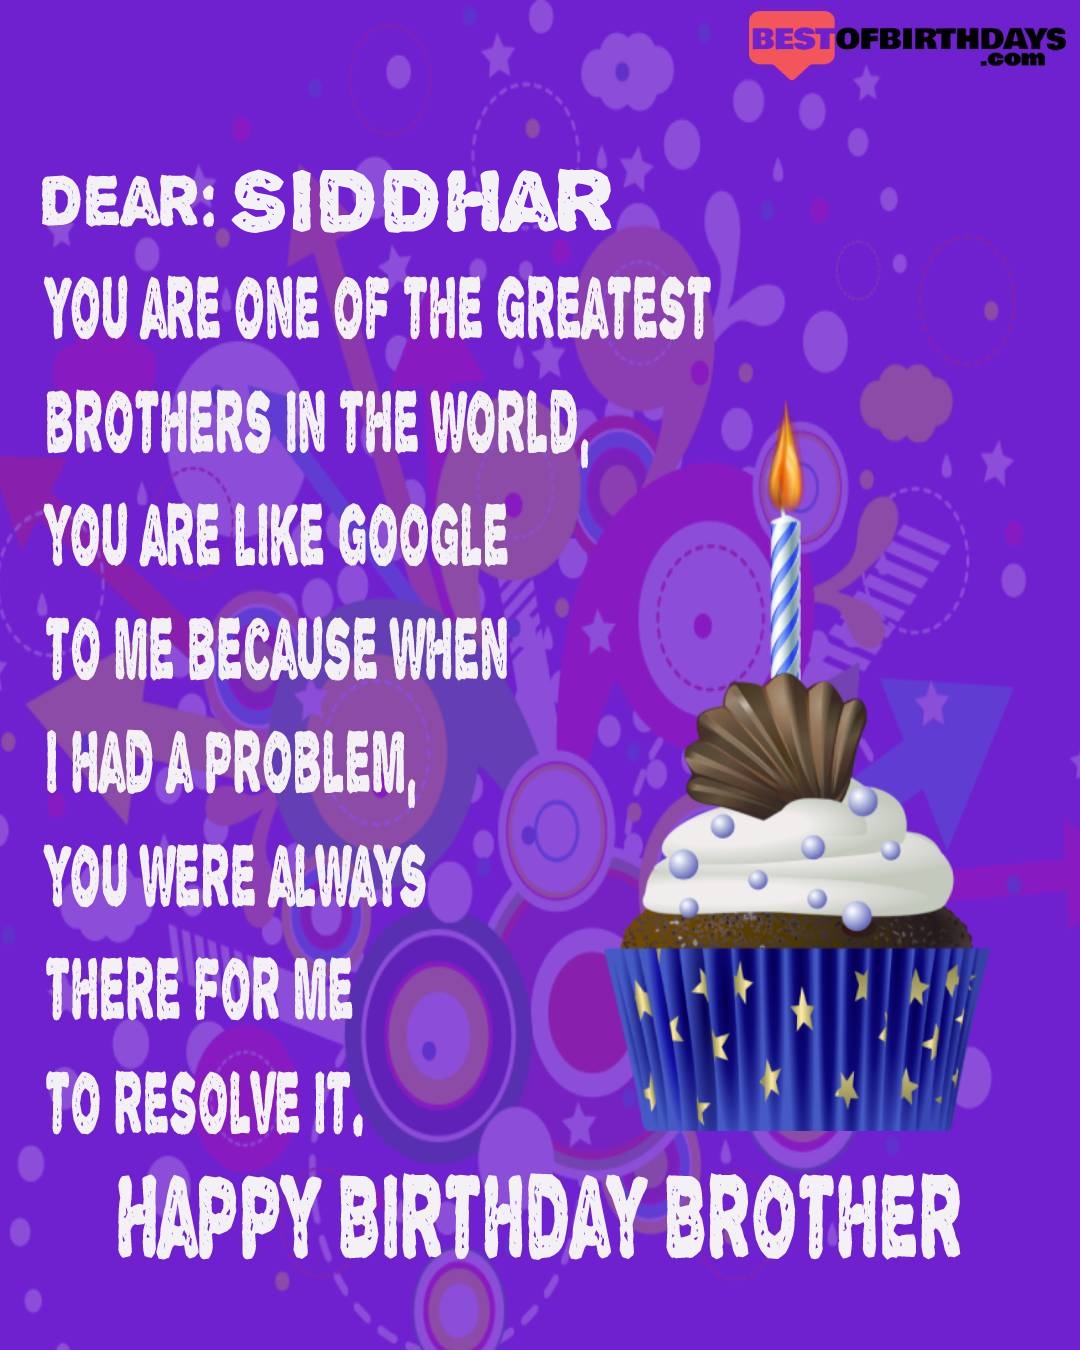 Happy birthday siddhar bhai brother bro